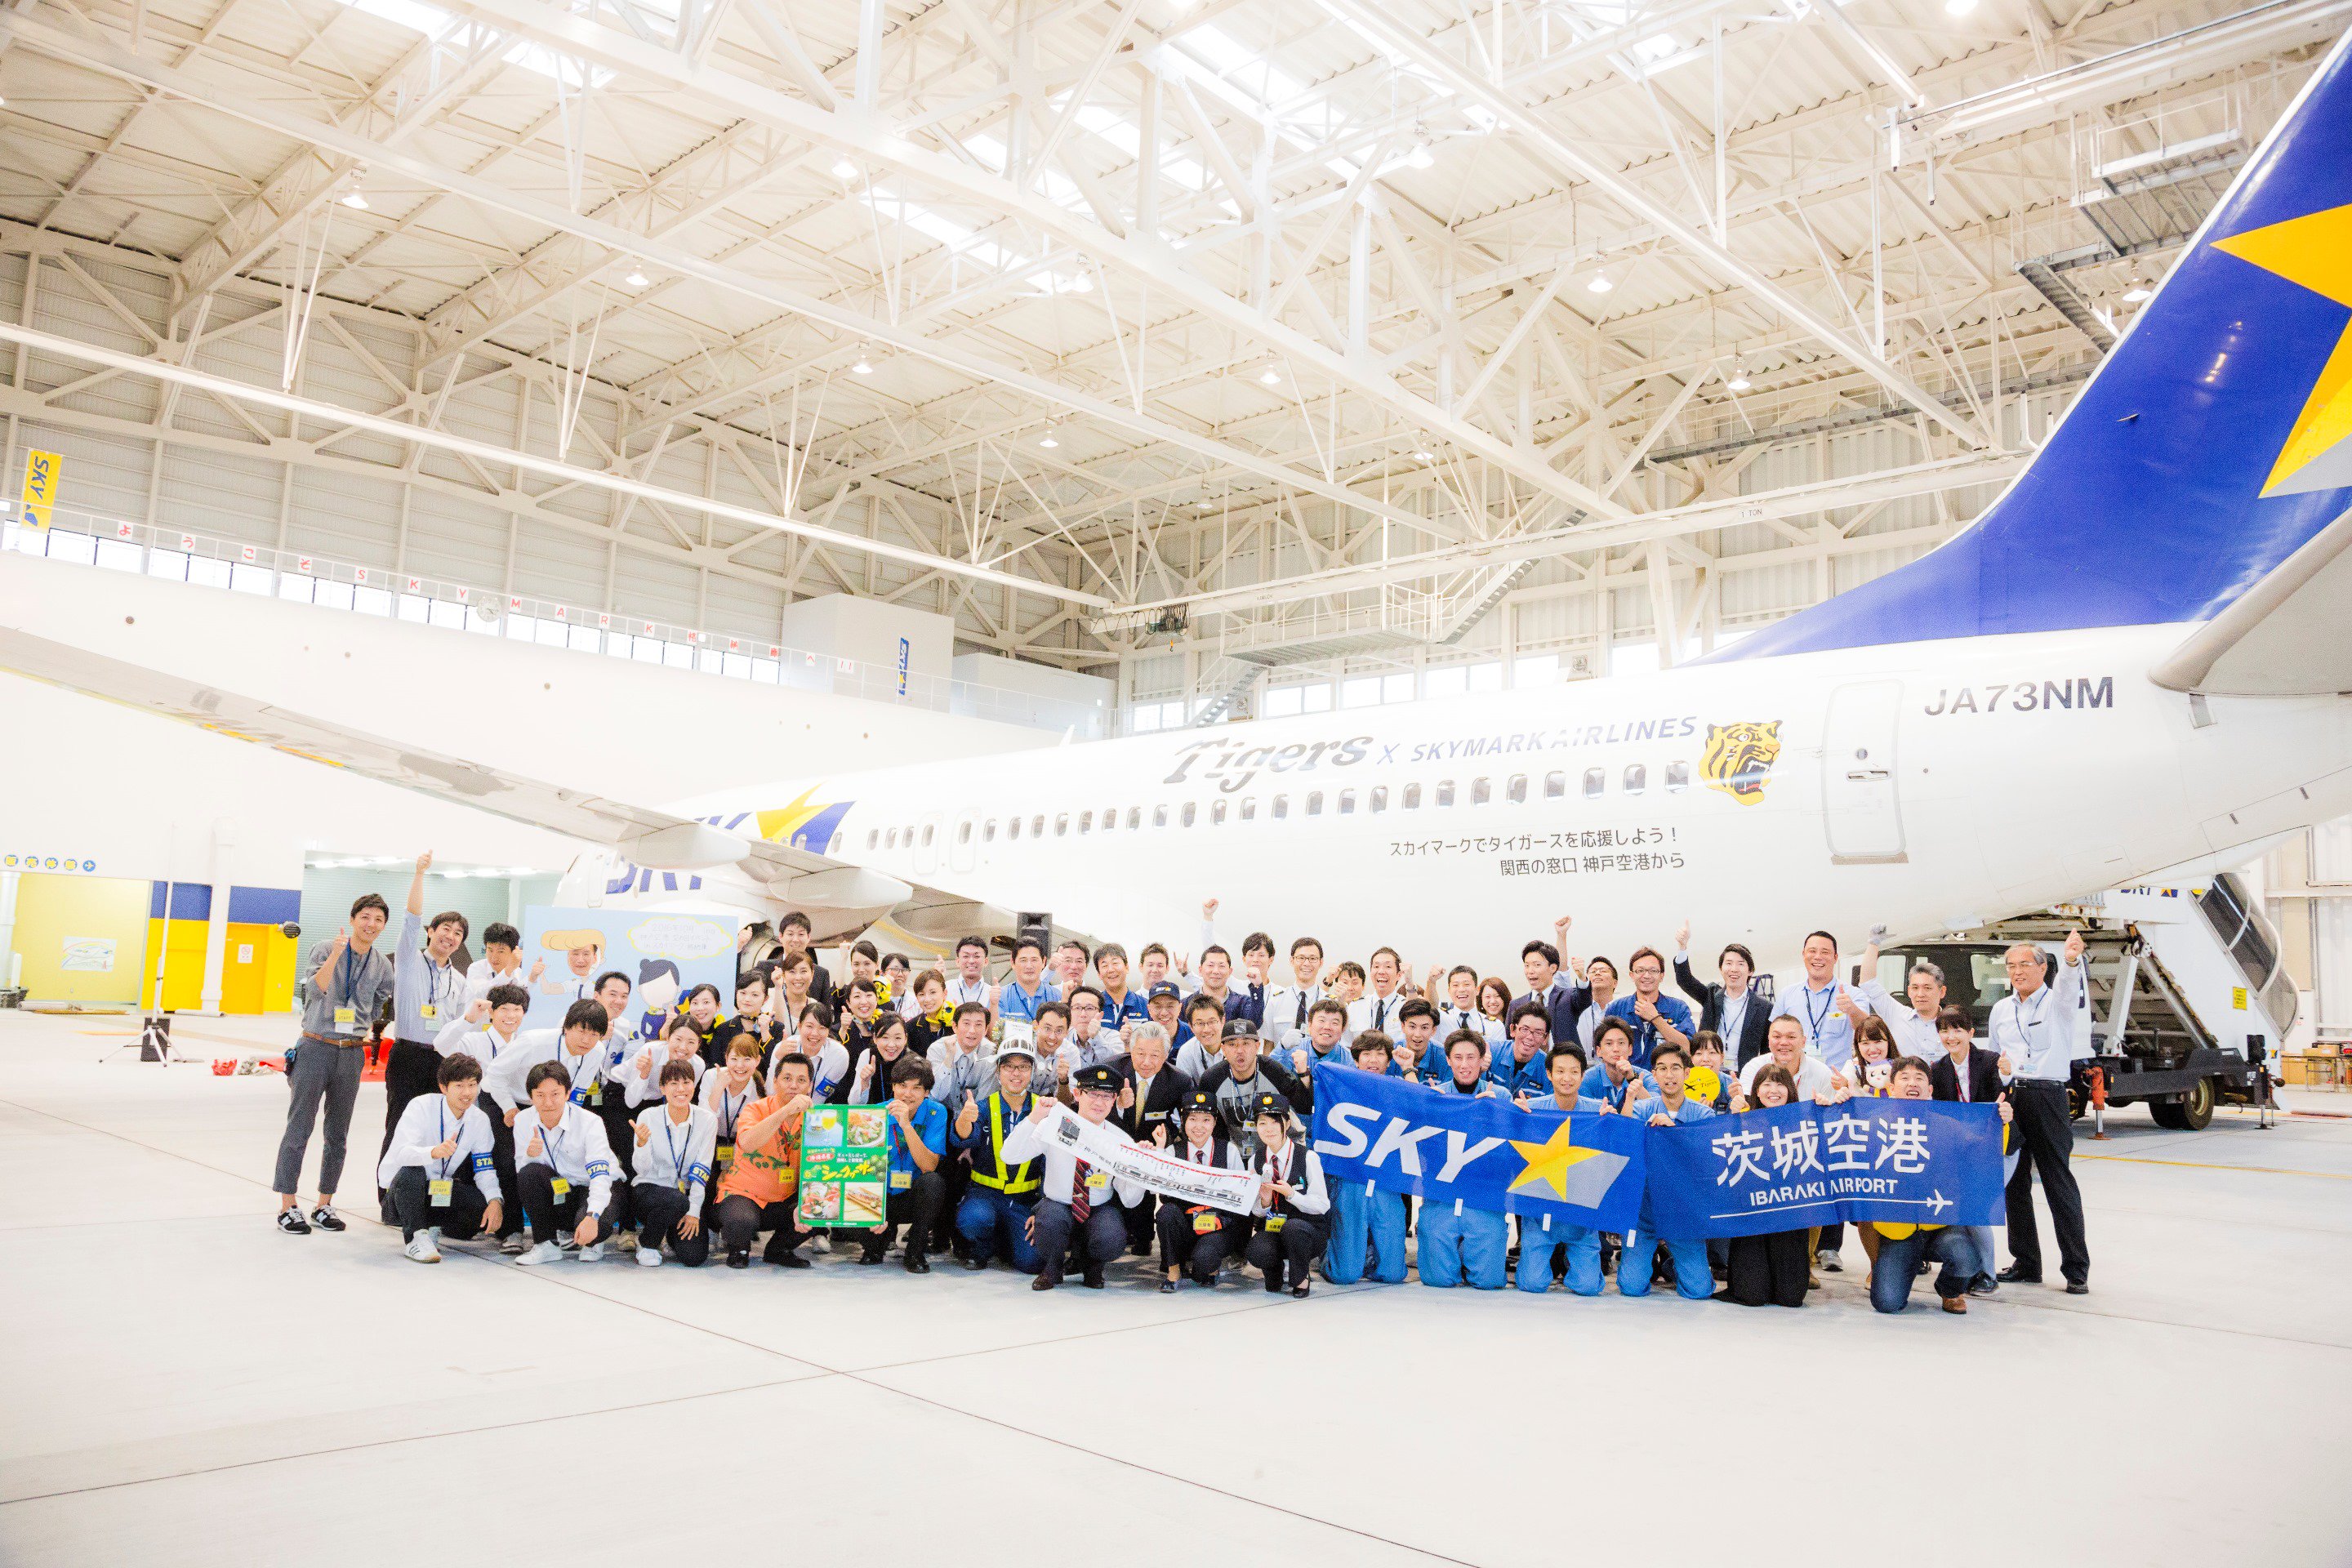 O Xrhsths 茨城空港 Sto Twitter 10月16日 日 神戸空港で行われた空の日イベントに参加してまいりました スカイマーク格納庫には タイガースジェットを見に たくさんのお客様がお越しになられました 茨城空港ブースでは 空港や茨城県の観光ｐｒのほか 特産